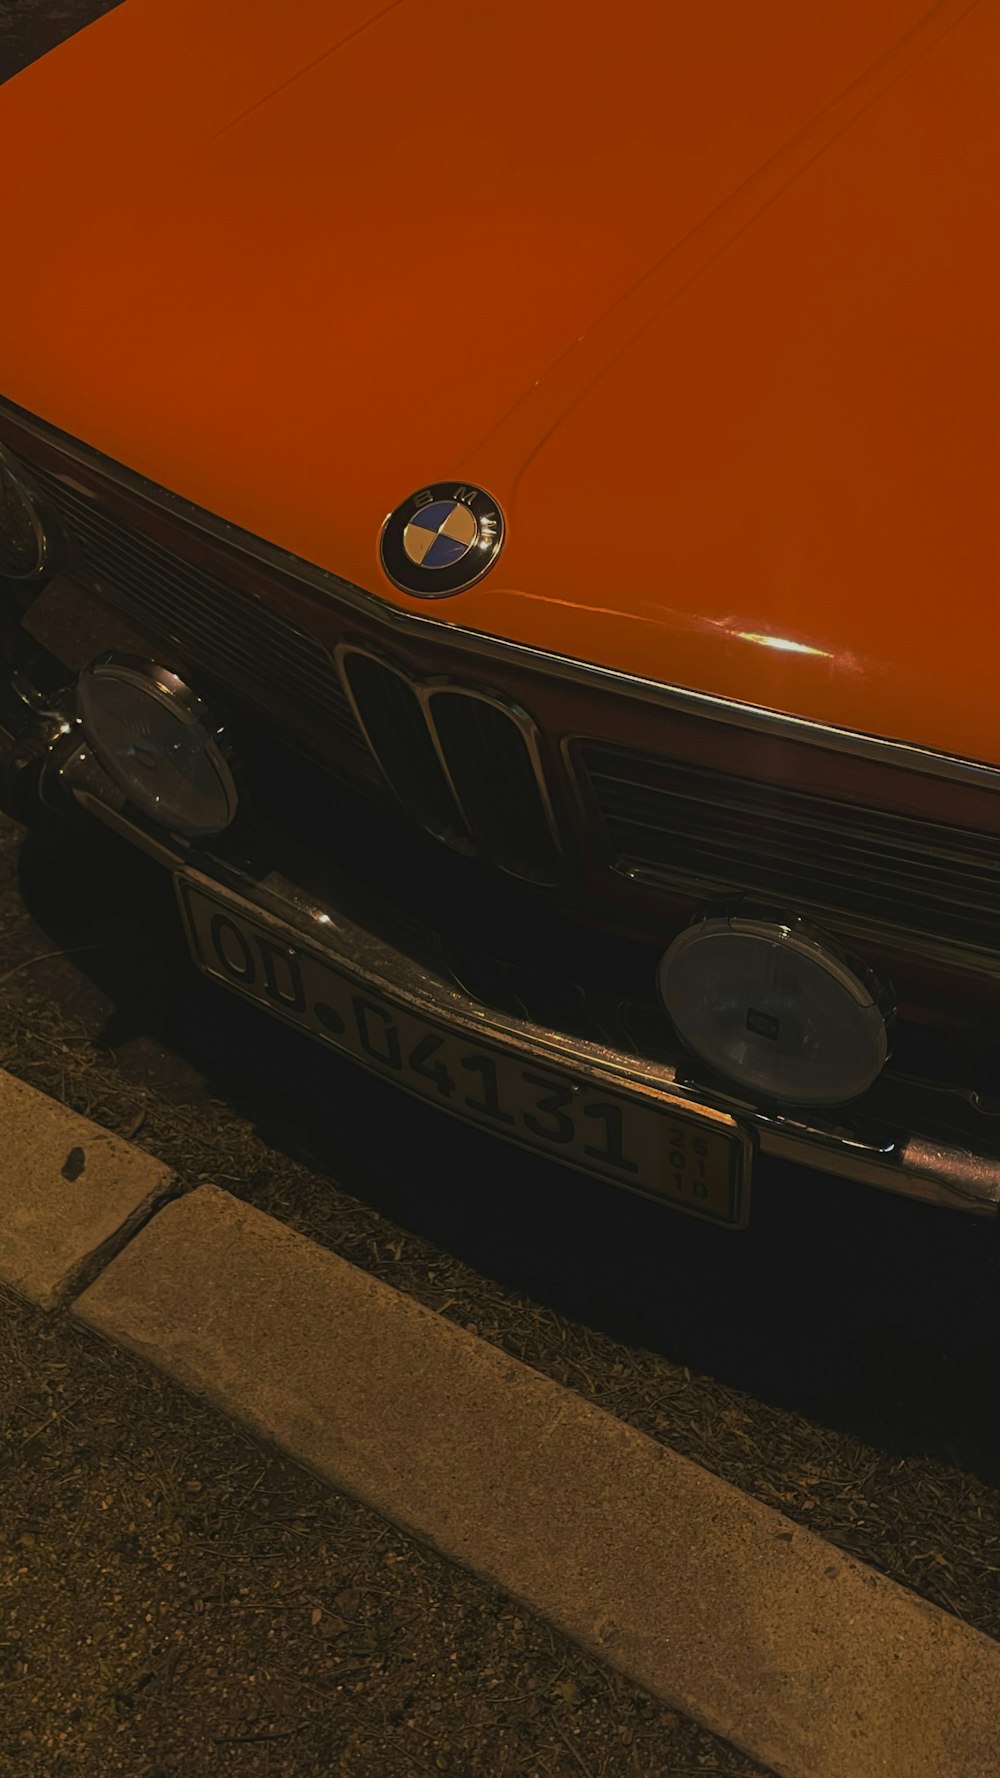 Ein orangefarbener BMW parkte am Straßenrand